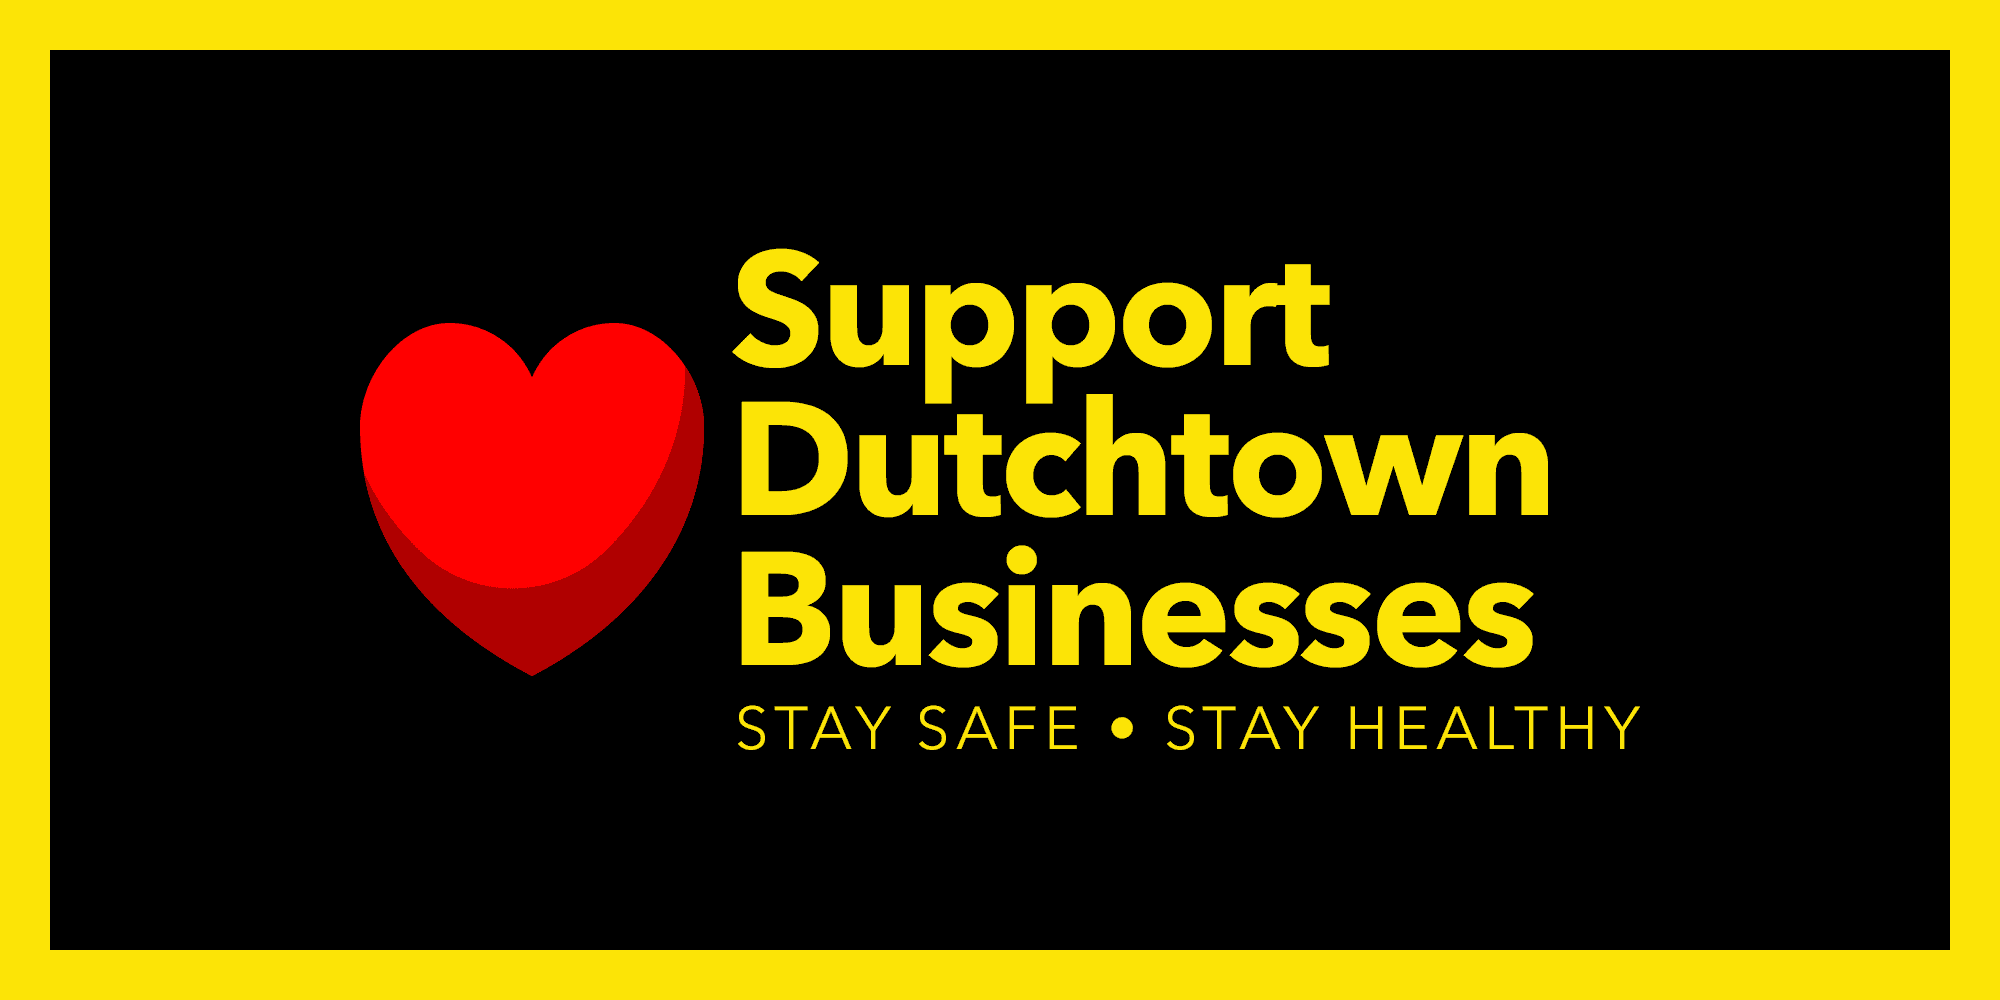 دعم شركات دوتشتاون. ابق آمنًا ، حافظ على صحتك.